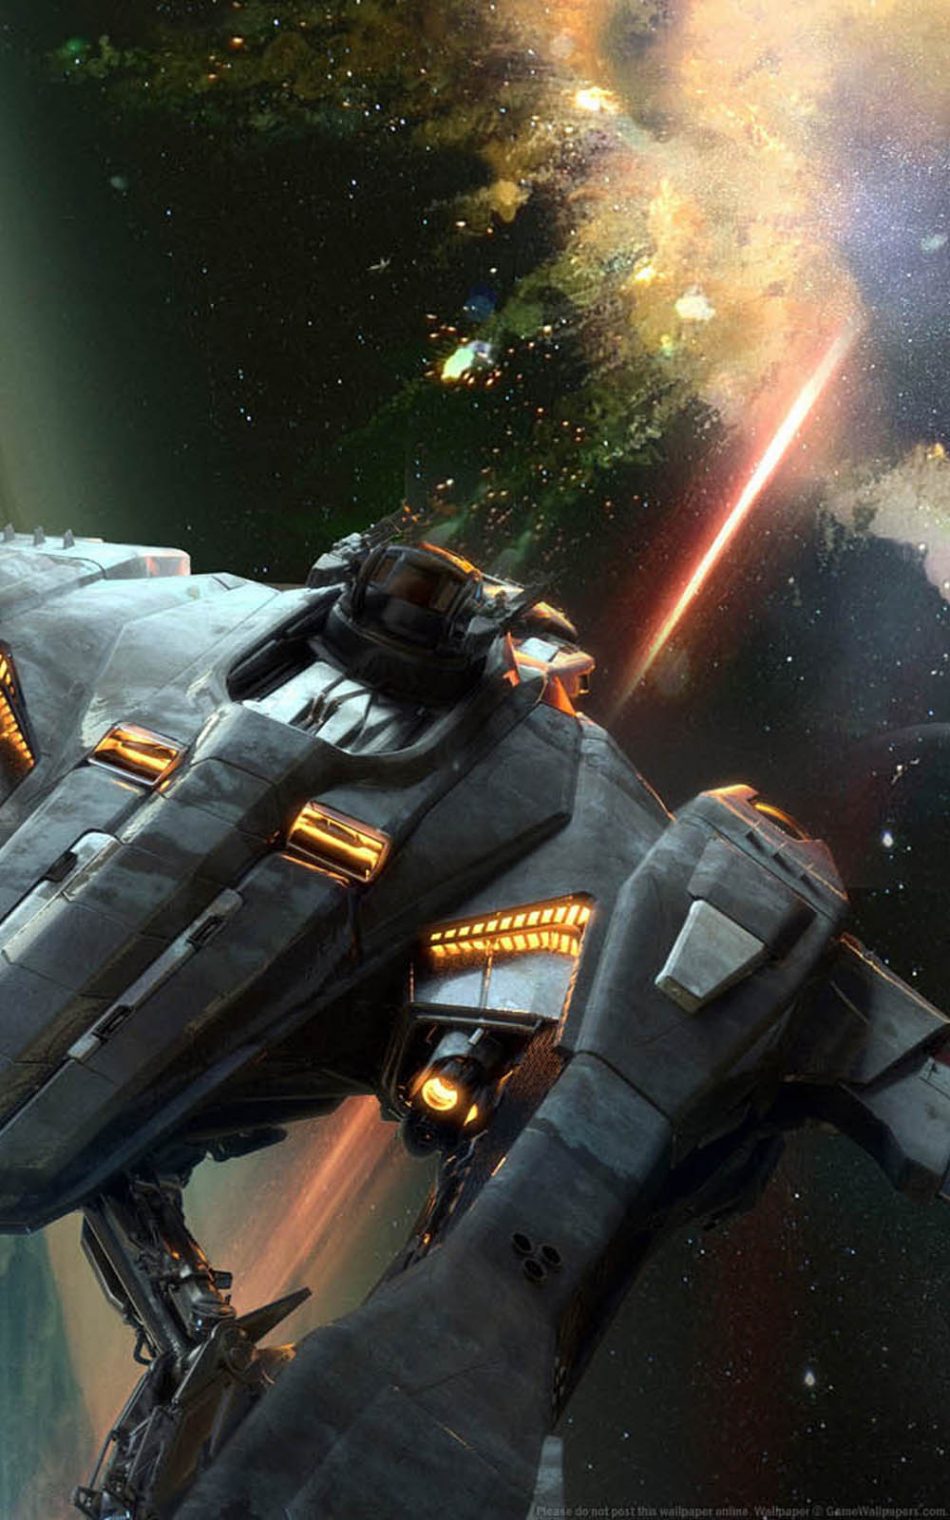 War Space Ship - Vanguard Concept Star Citizen , HD Wallpaper & Backgrounds